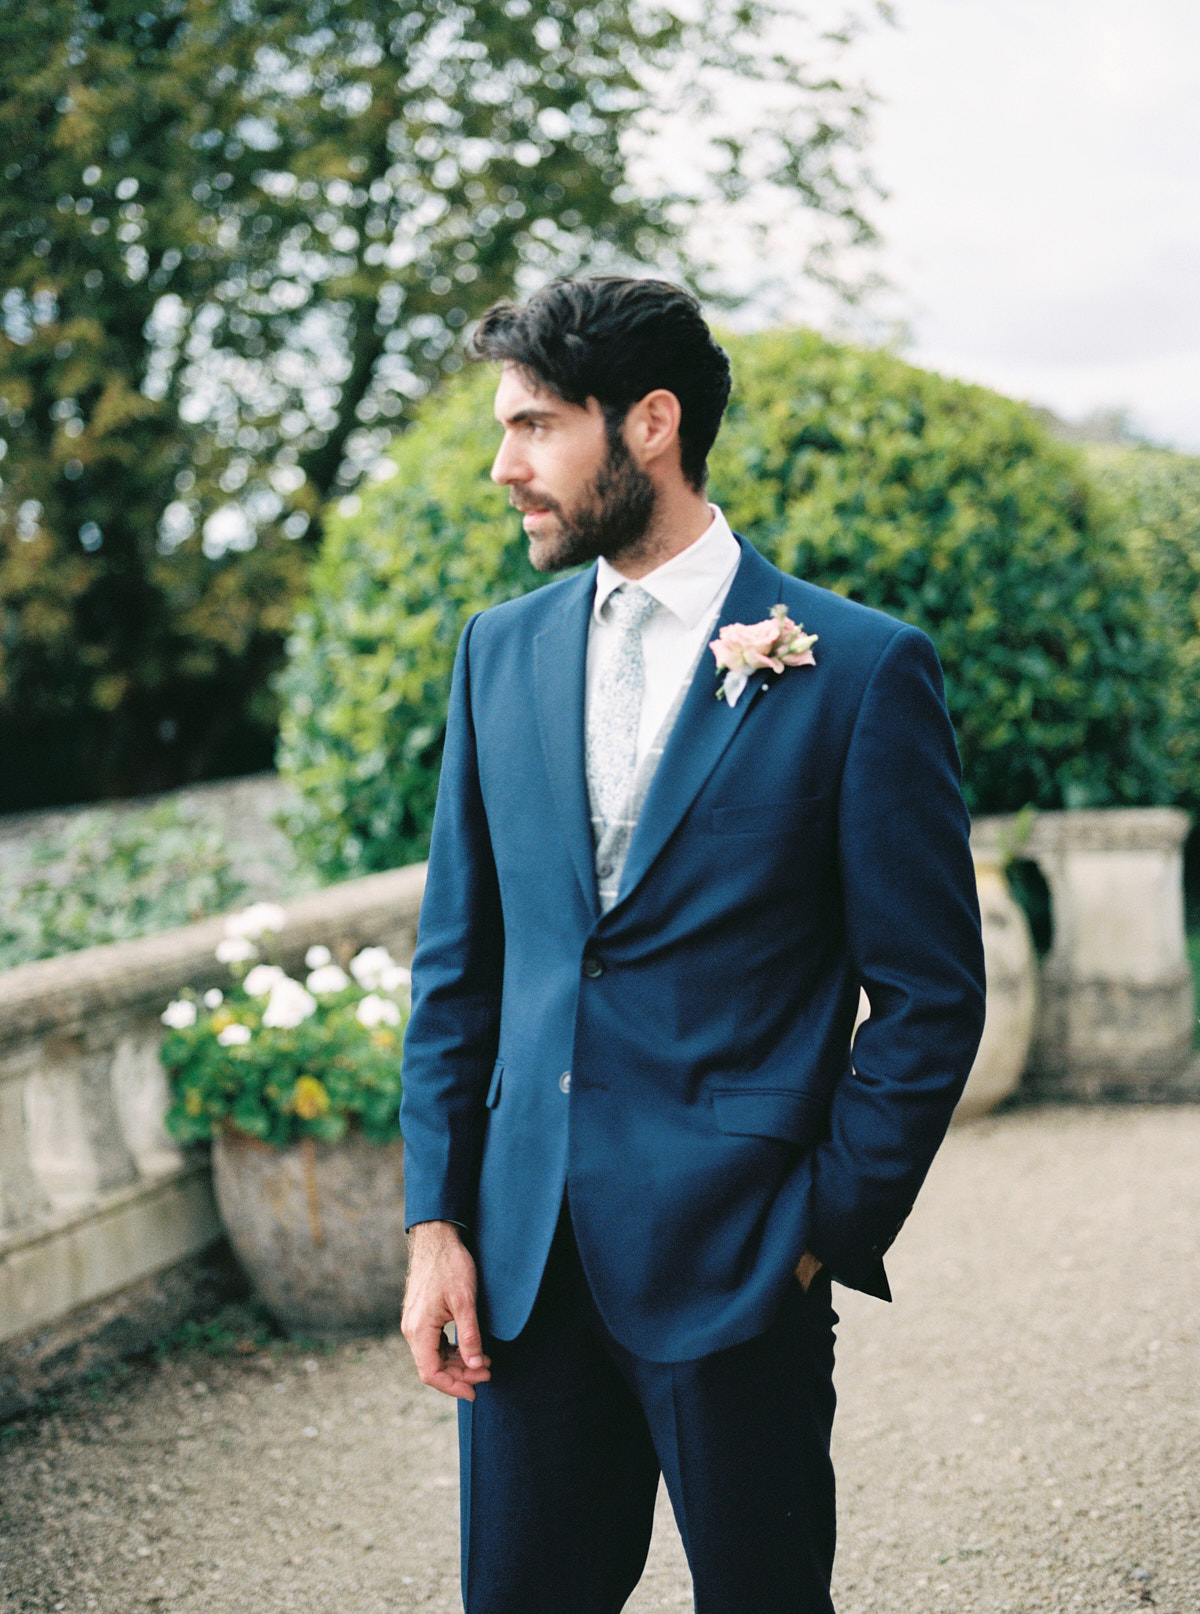 the groom wearing dark blue suit